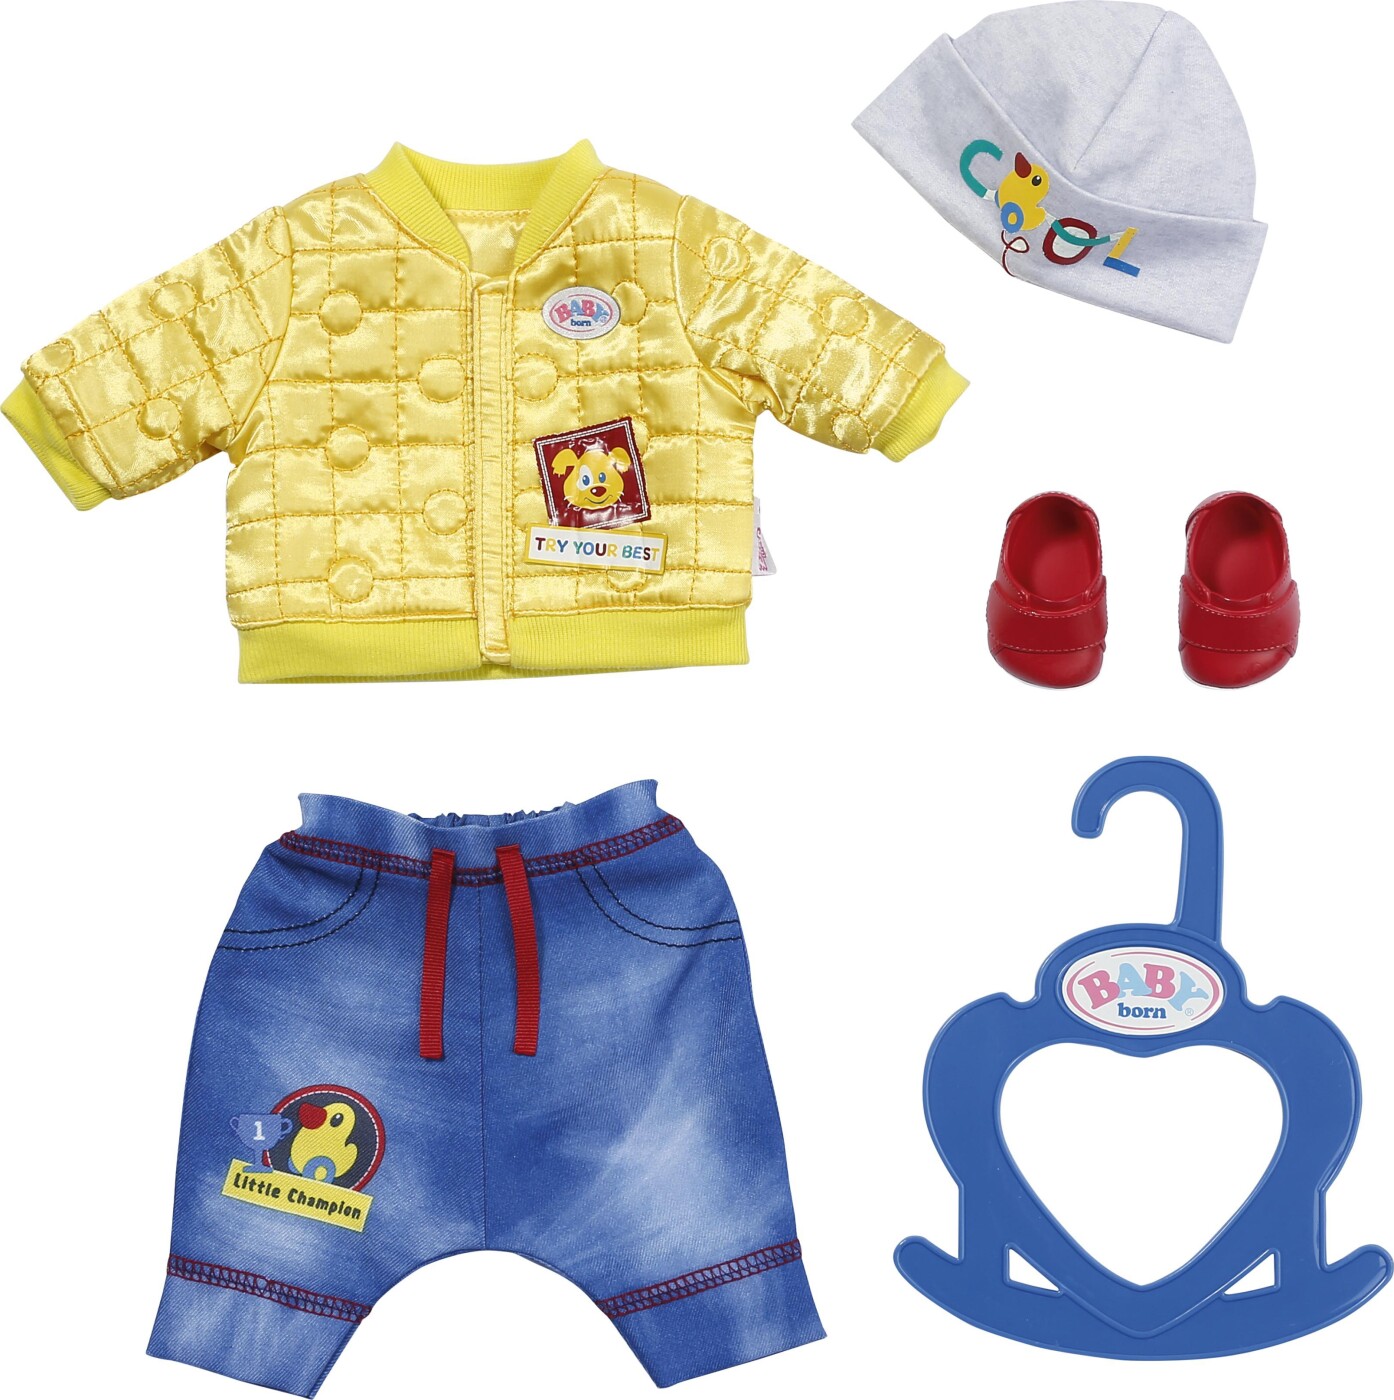 Stilk Christchurch genstand Baby Born - Dukketøj - Little Cool Kids Outfit - 36 Cm | Se tilbud og køb  på Gucca.dk